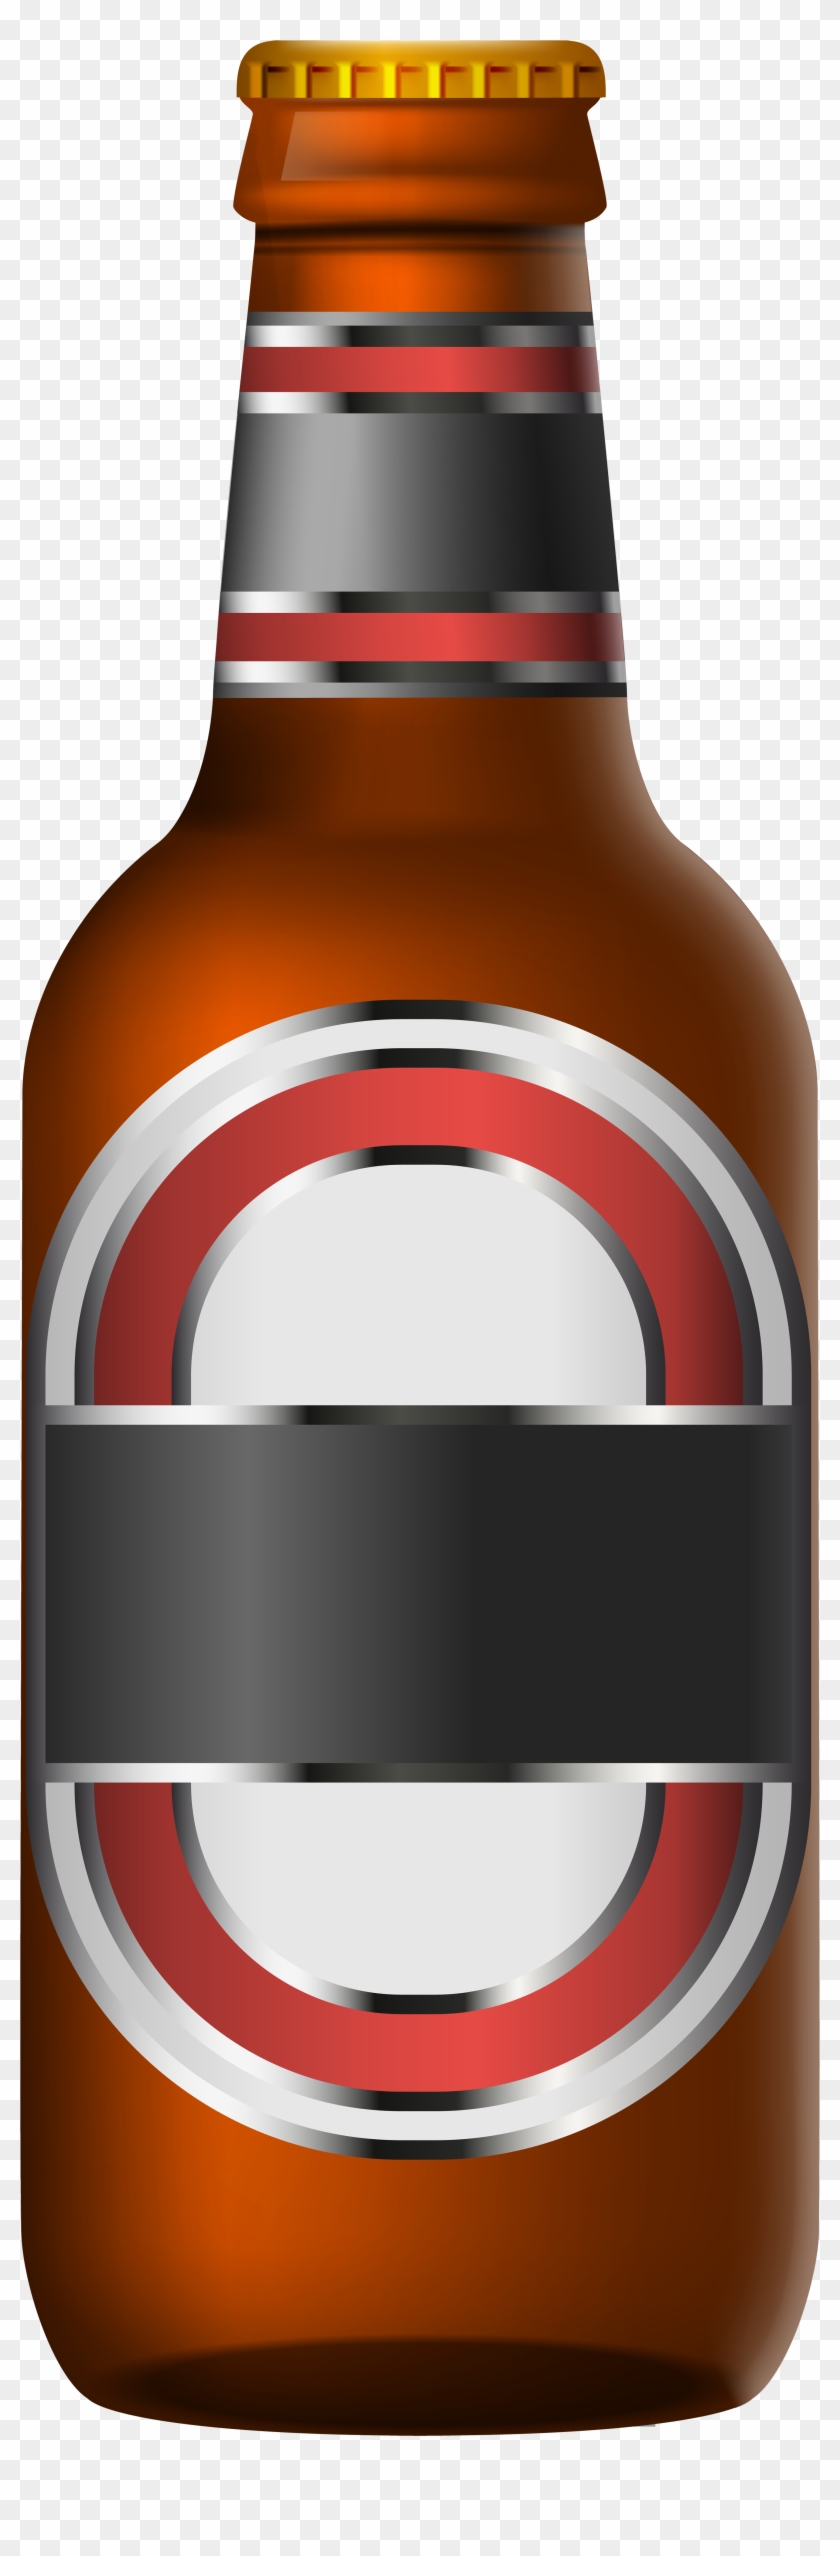 Svg Library Download Transparent Png Clip Art Image - Beer Bottle Clip Art Png